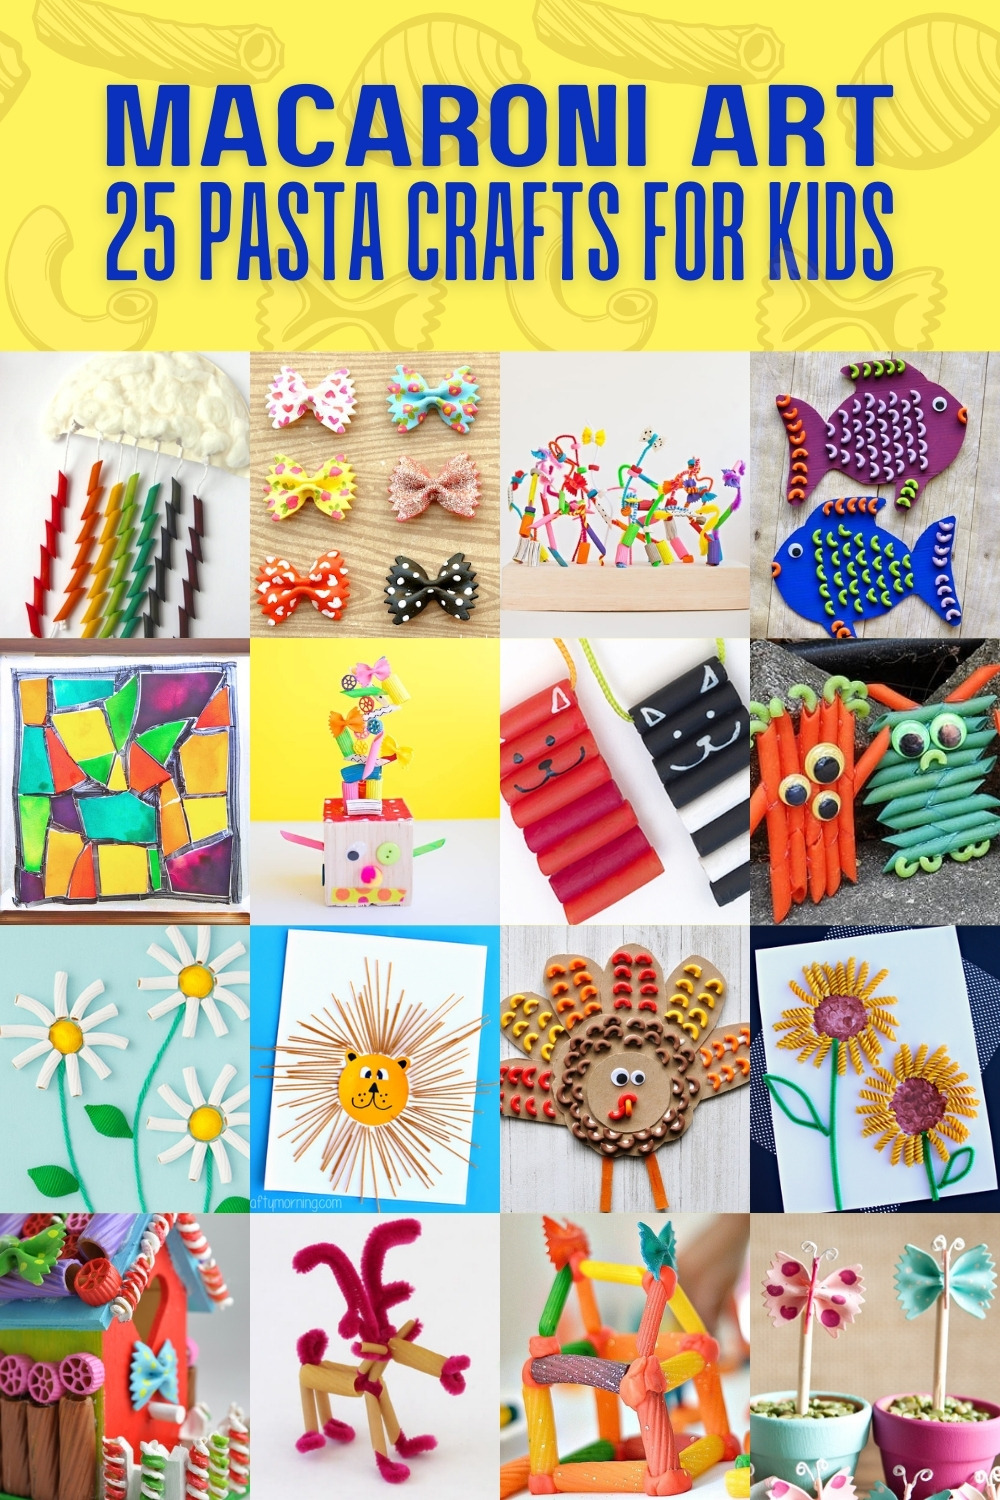 https://diycandy.b-cdn.net/wp-content/uploads/2021/10/Macaroni-Art-25-pasta-crafts-for-kids.jpg